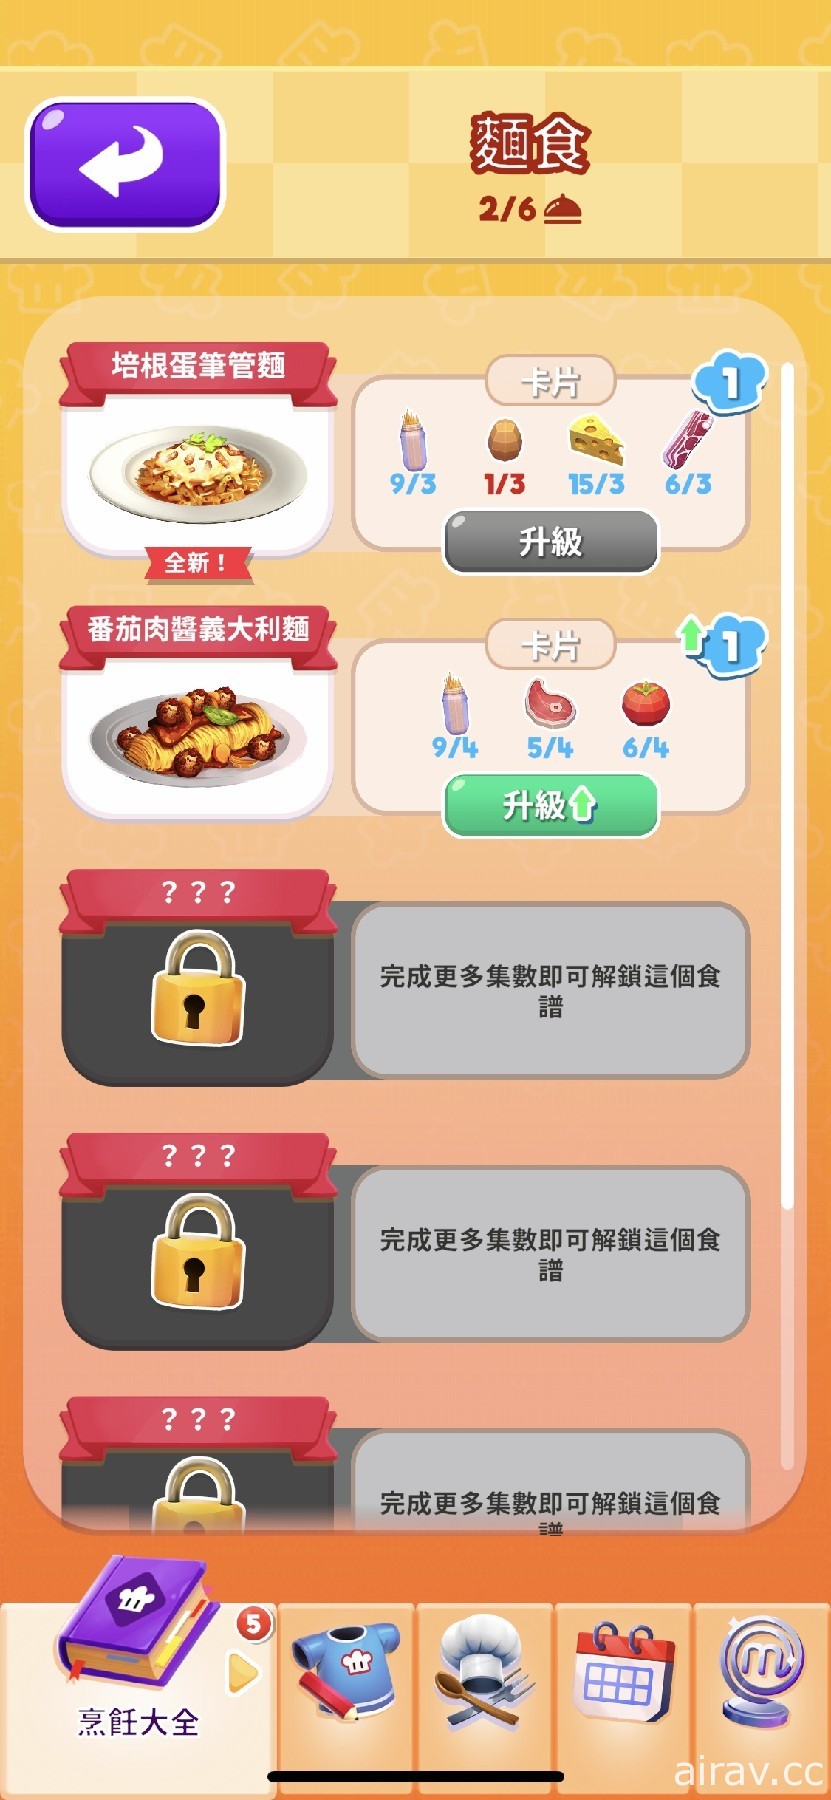 趣味烹飪競賽遊戲《MasterChef: Let’s Cook》於 Apple Arcade 推出 展現廚藝的時刻到了